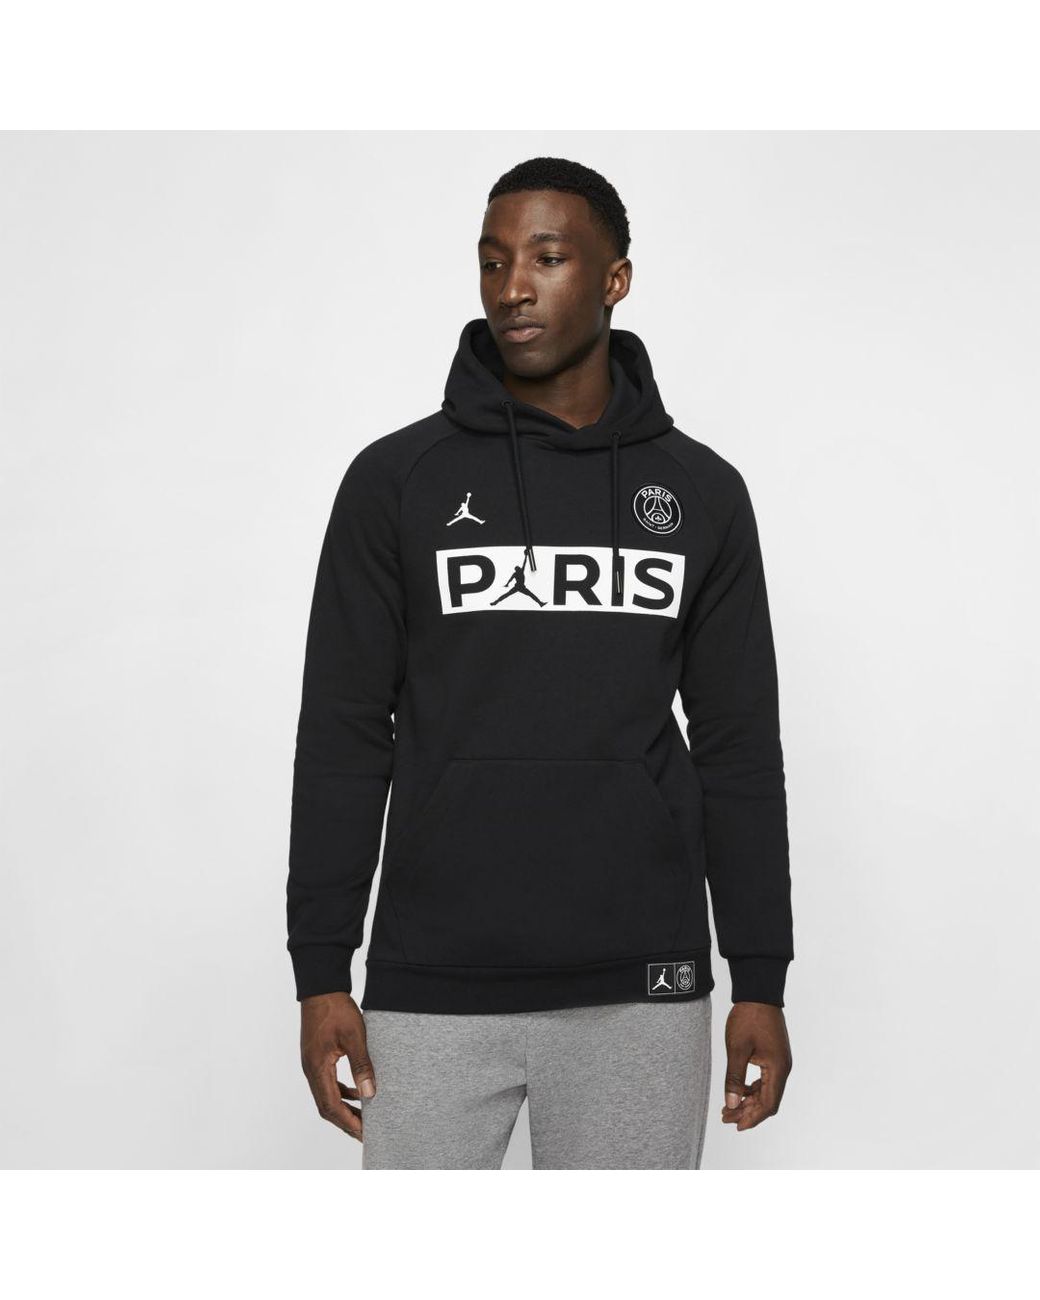 Nike Jordan Paris Saint-germain Fleece Pullover Hoodie in Black for Men